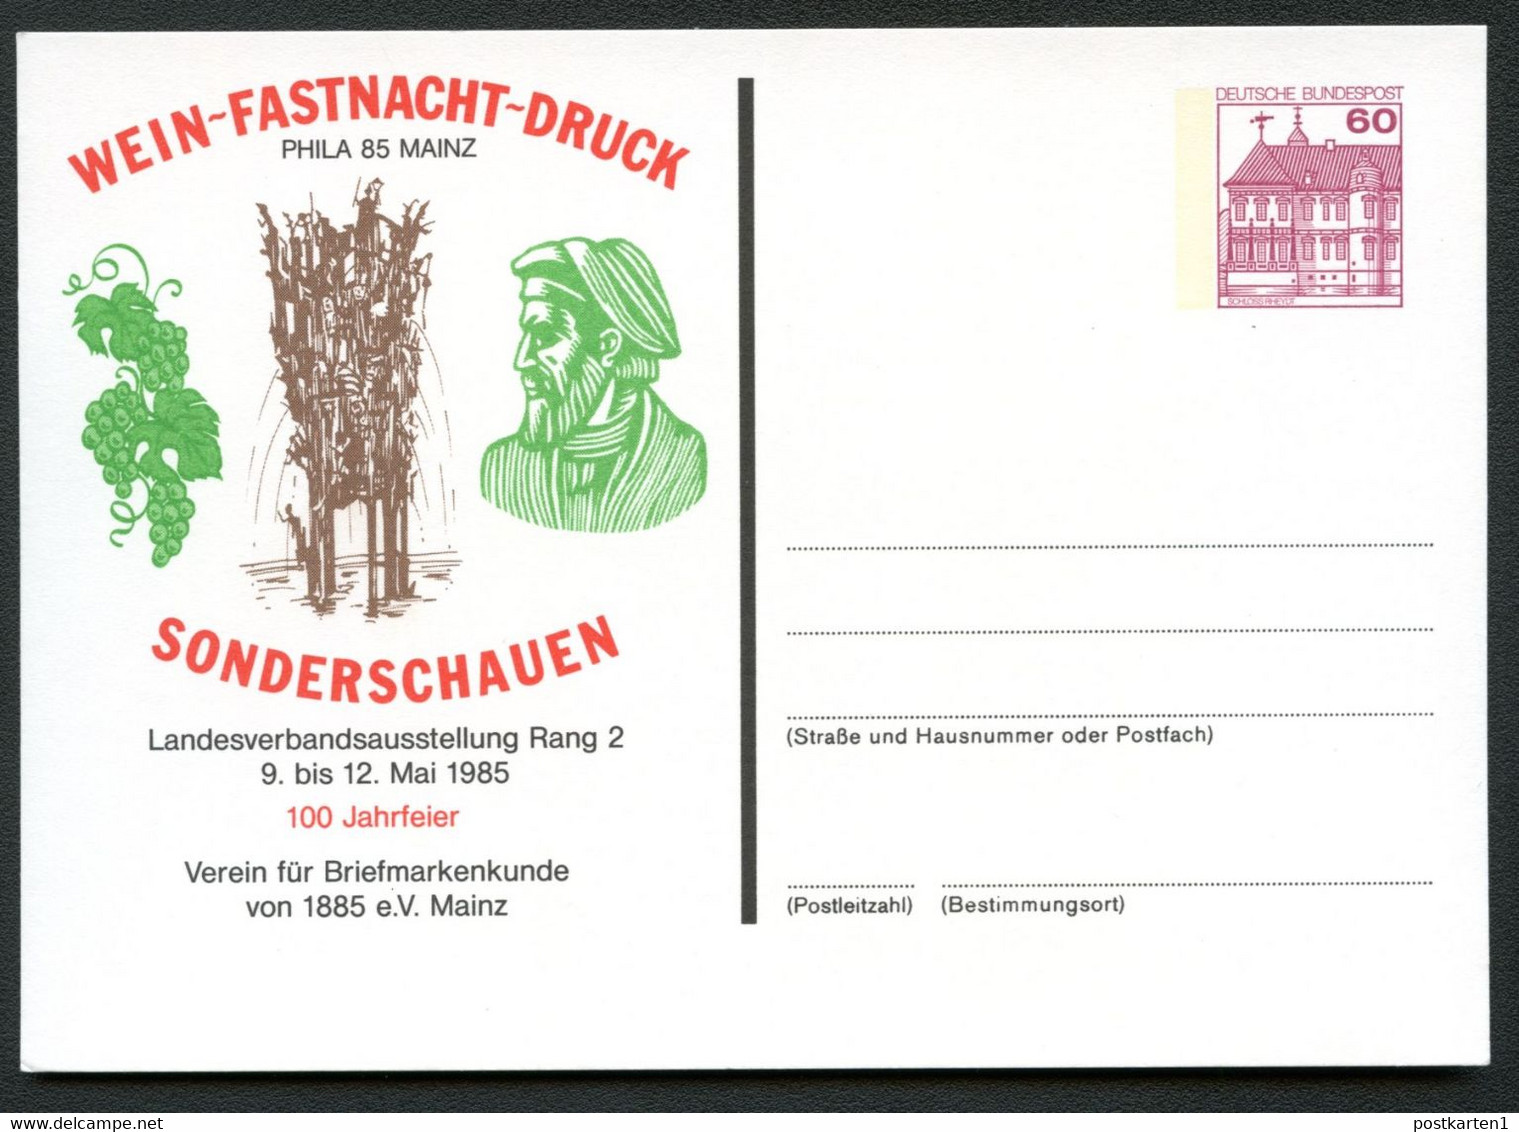 Bund PP106 D2/050 GUTENBERG WEIN FASTNACHTSBRUNNEN Mainz 1985 - Private Postcards - Mint